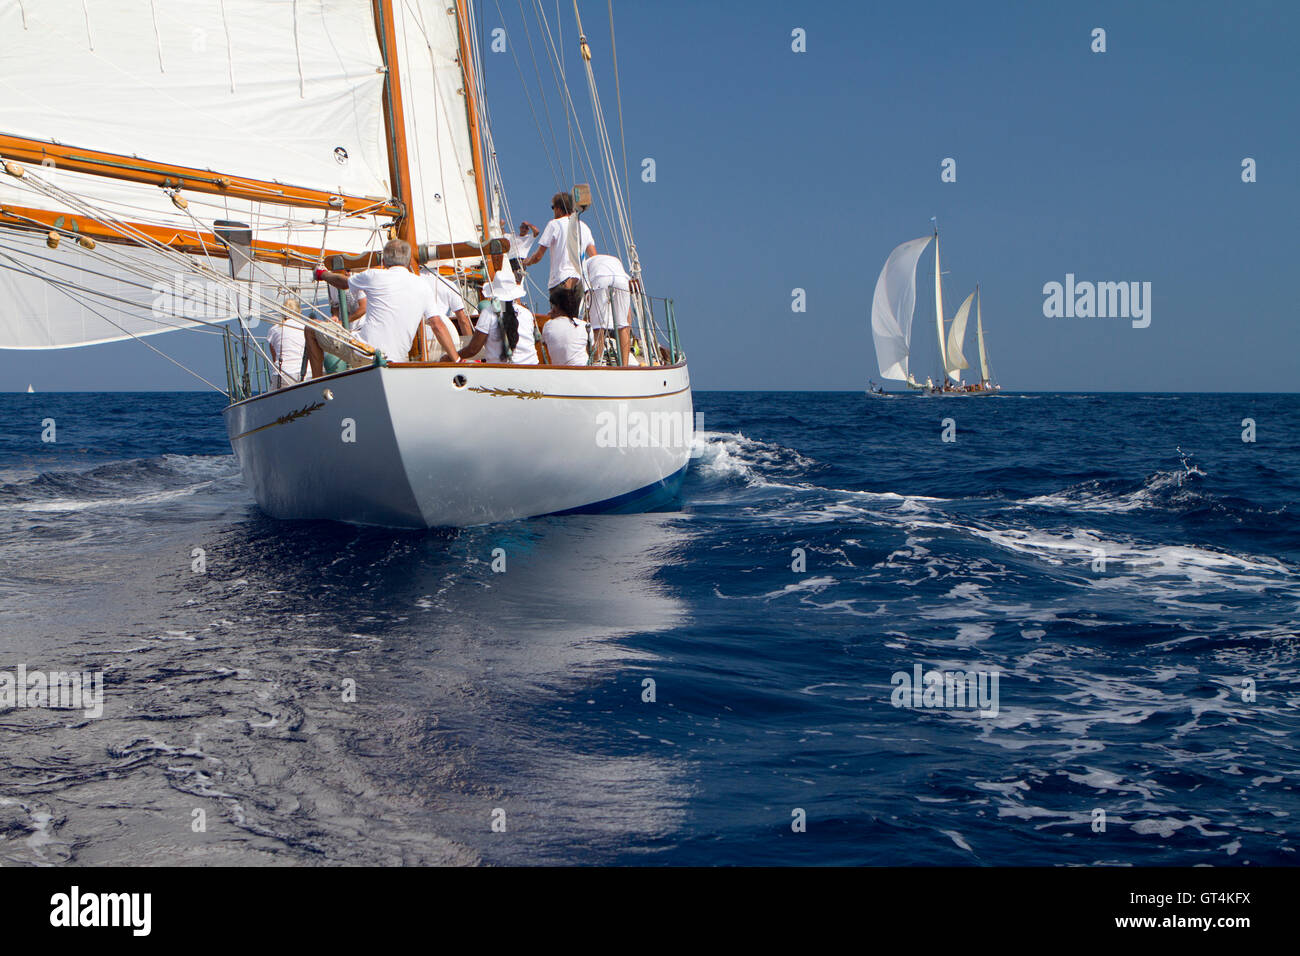 Imperia, Italie. Le 8 septembre 2016. Yachts à voile lors de Vele d'Epoca, un yacht vintage concours organisé tous les deux ans à Imperia. Banque D'Images